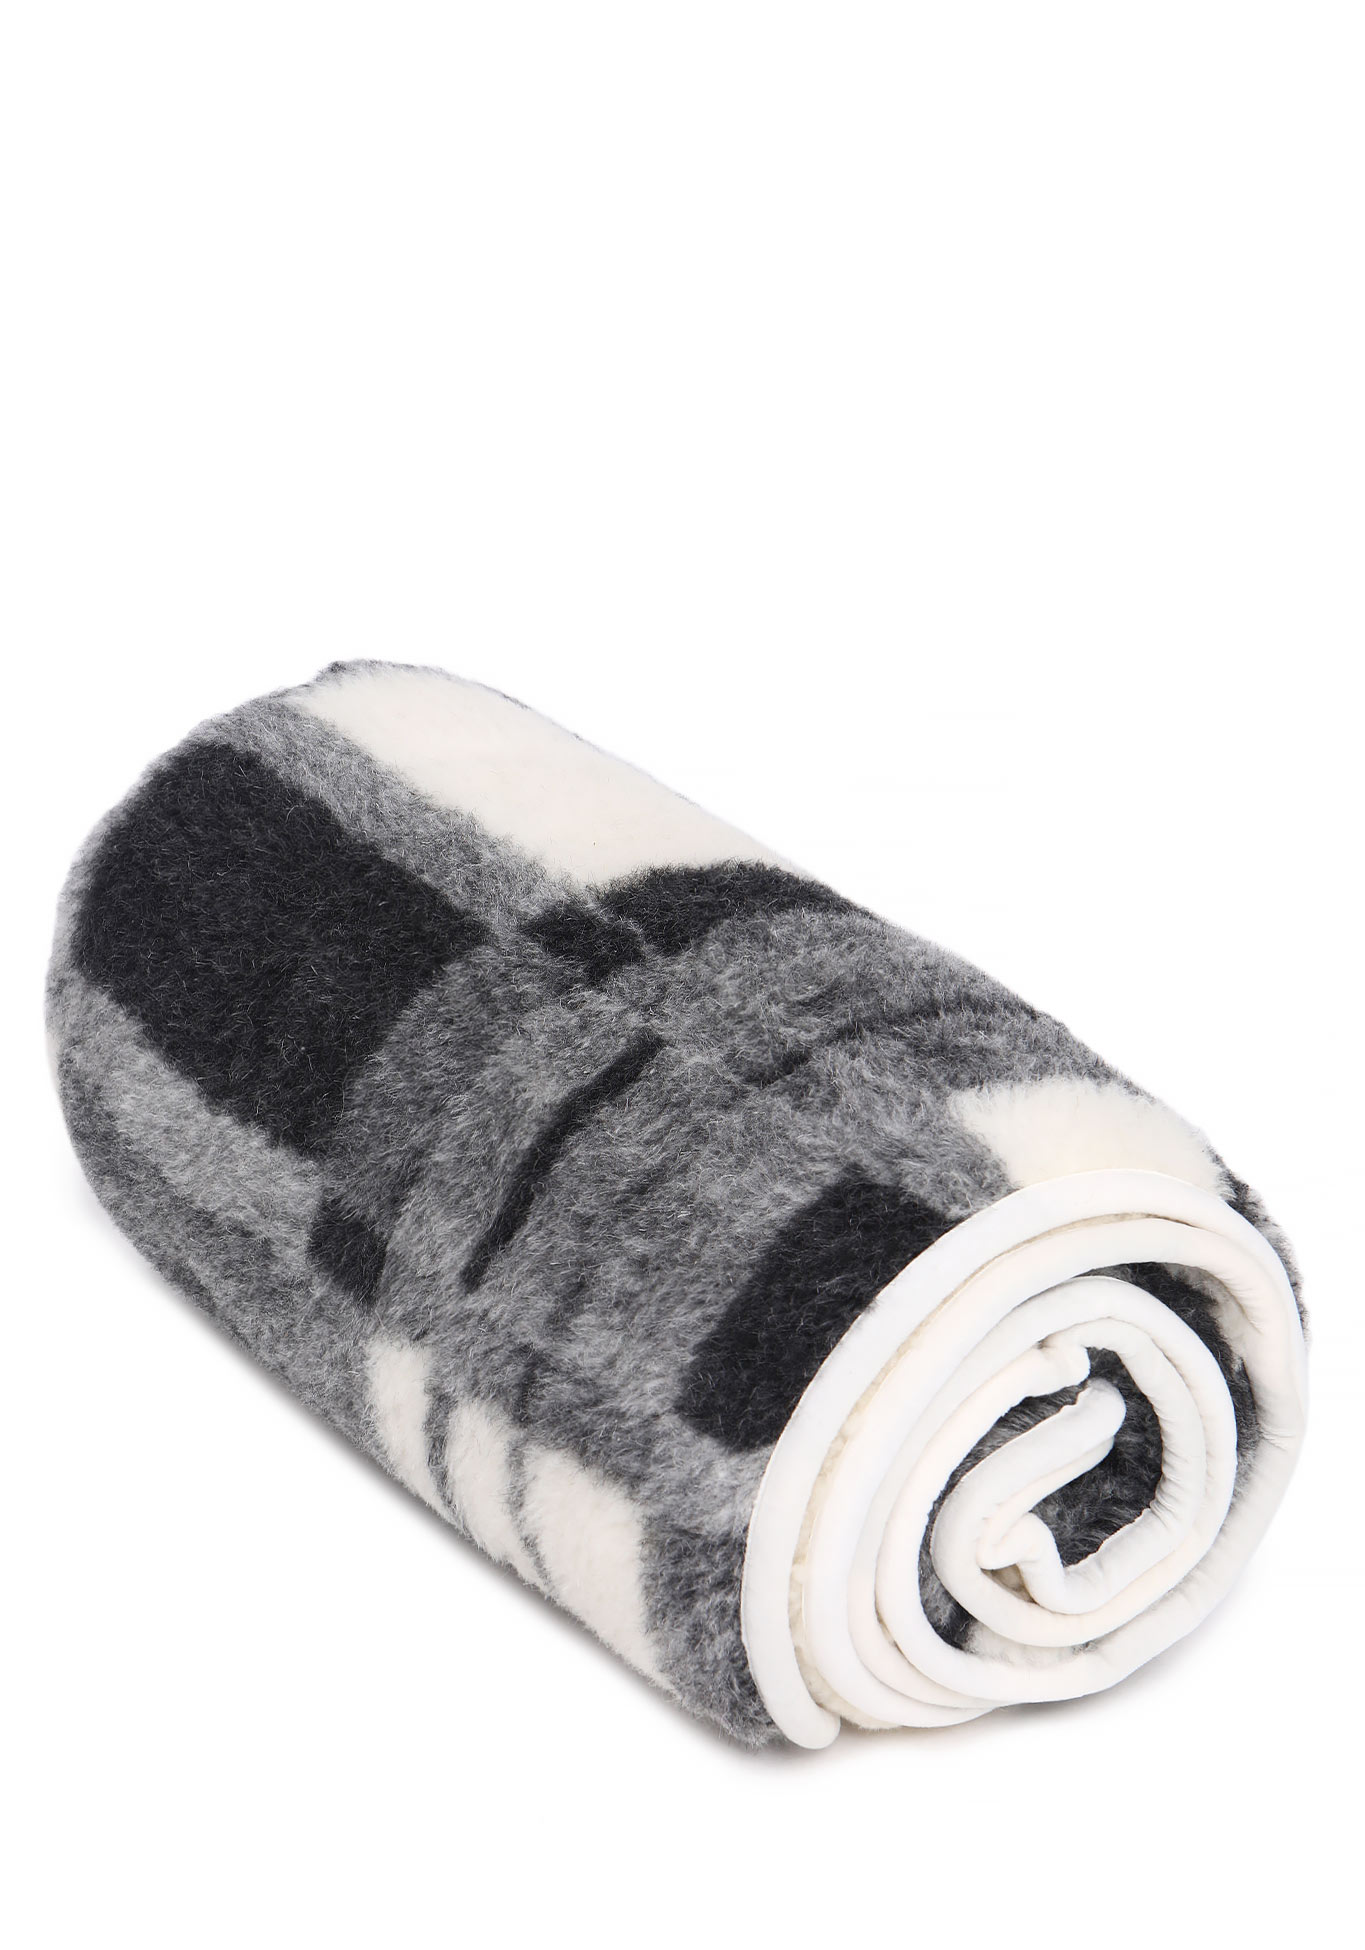 Одеяло из натуральной овечьей шерсти Alwero, цвет бело-серый, размер 100х140 - фото 2